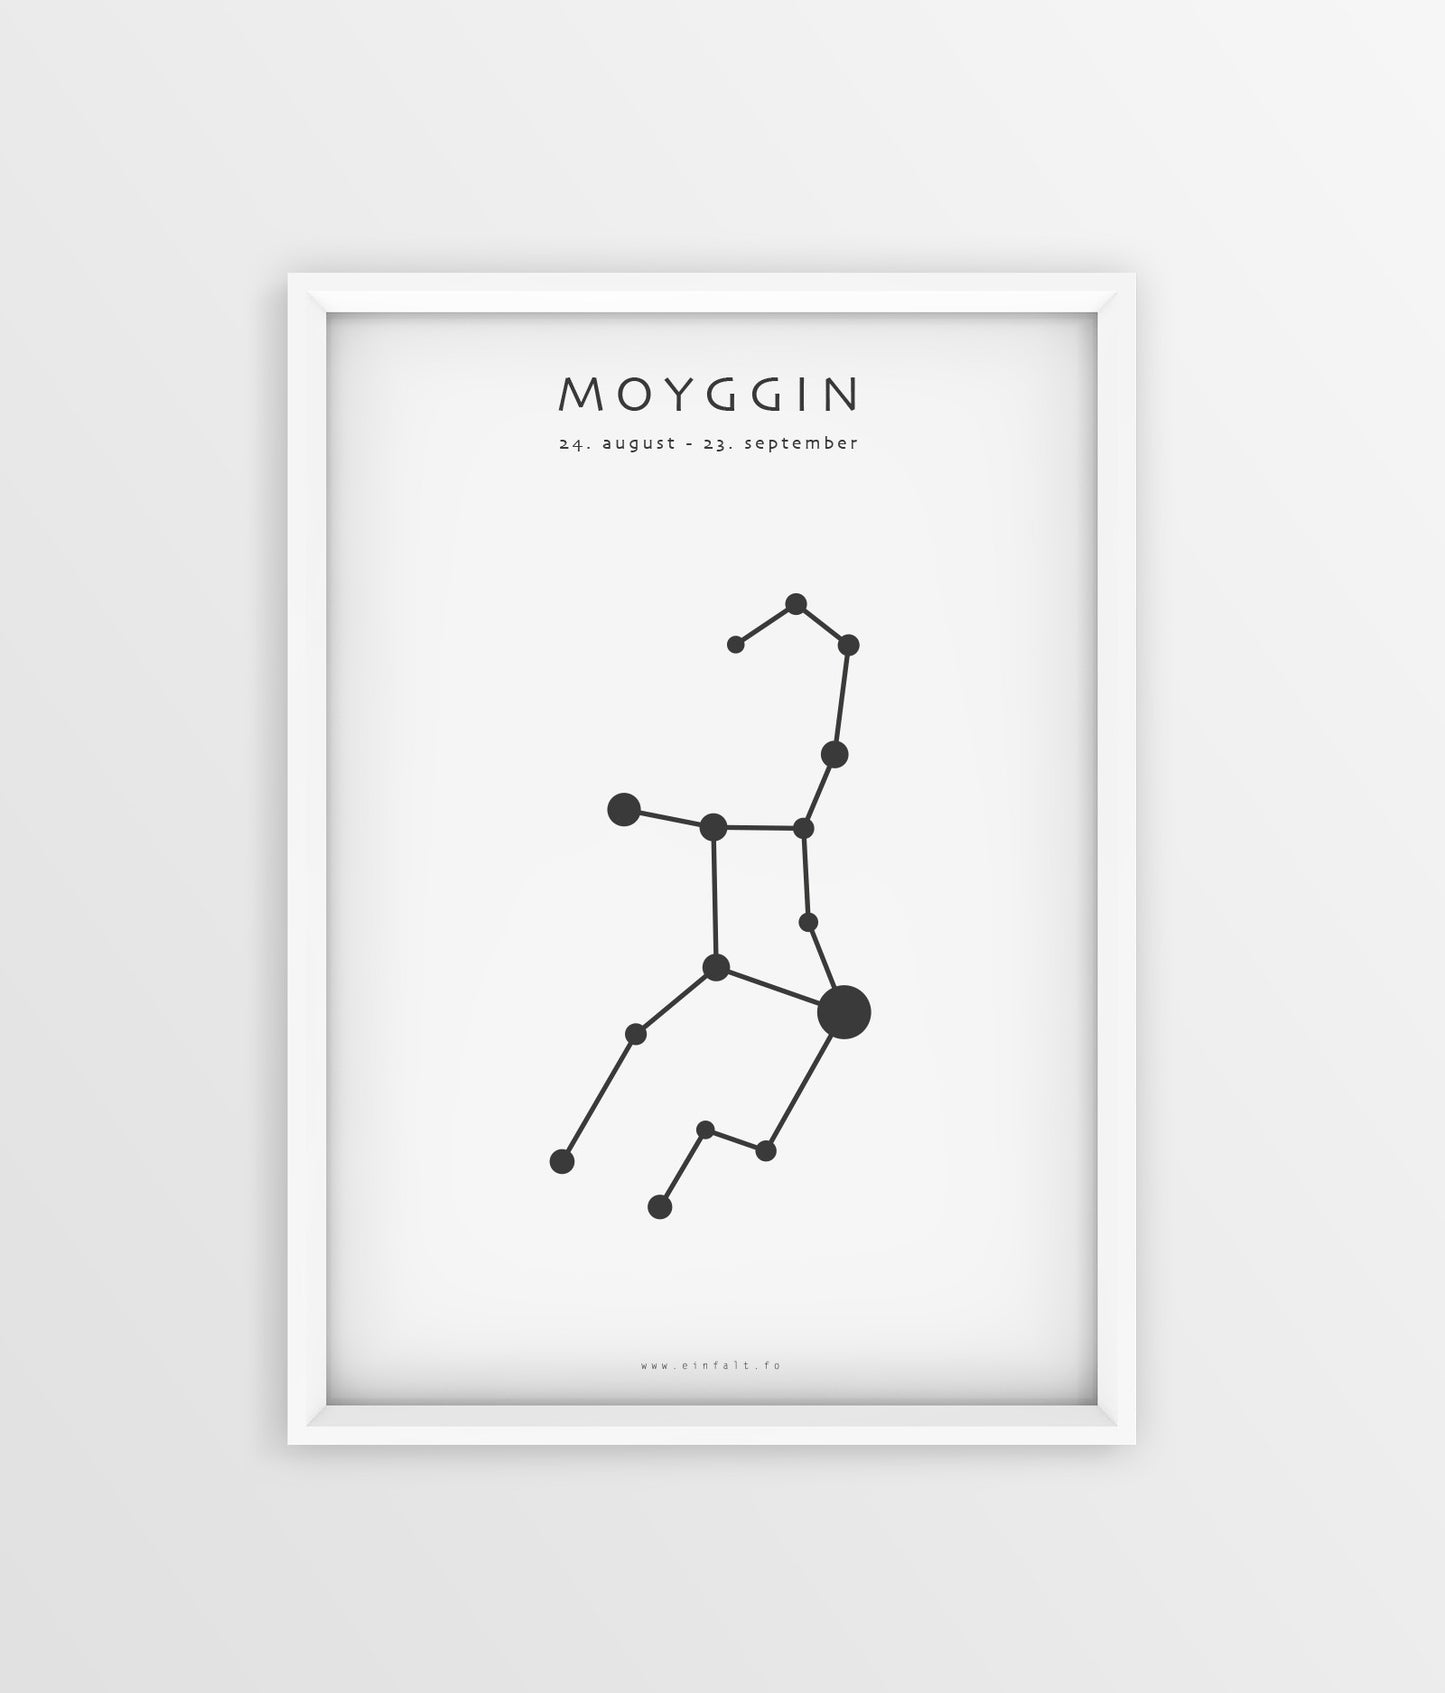 Stjørnumerki - Moyggin